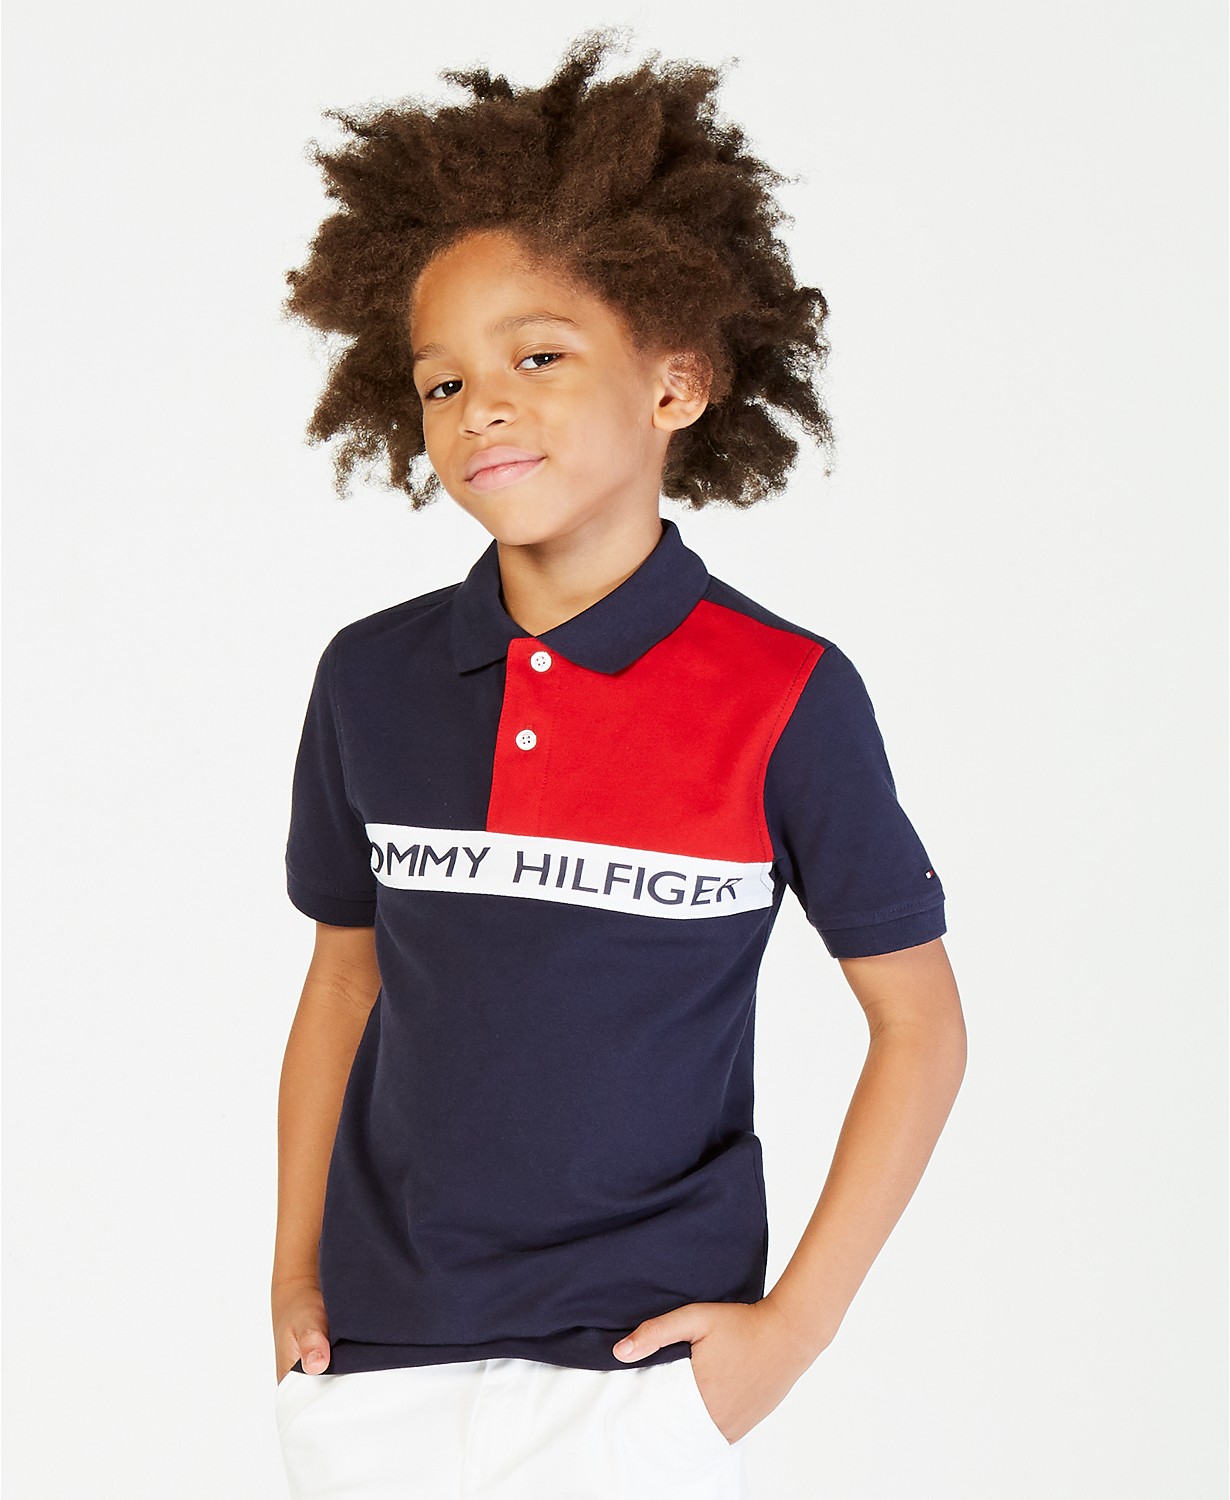 Toddler Boys Colorblocked Polo Shirt